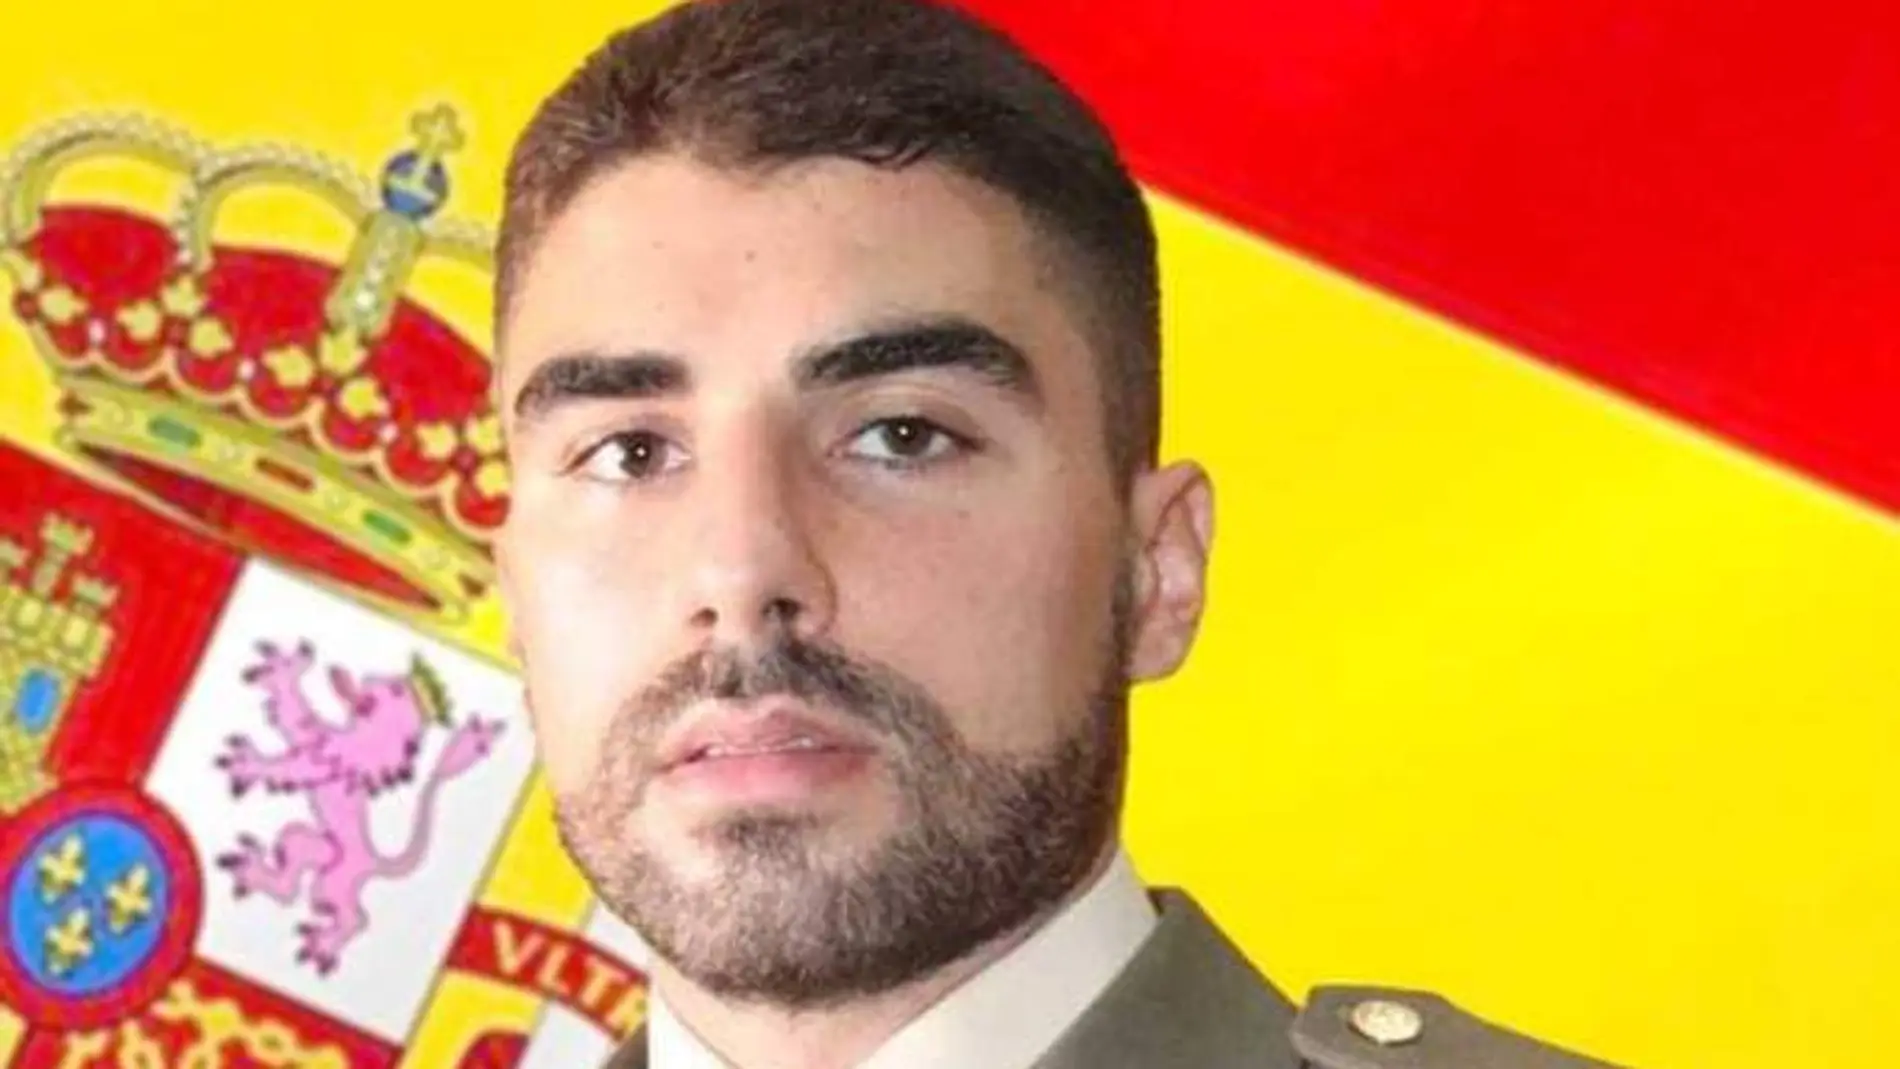 El Ejército confirma la muerte del sargento desaparecido en un pantano de Huesca